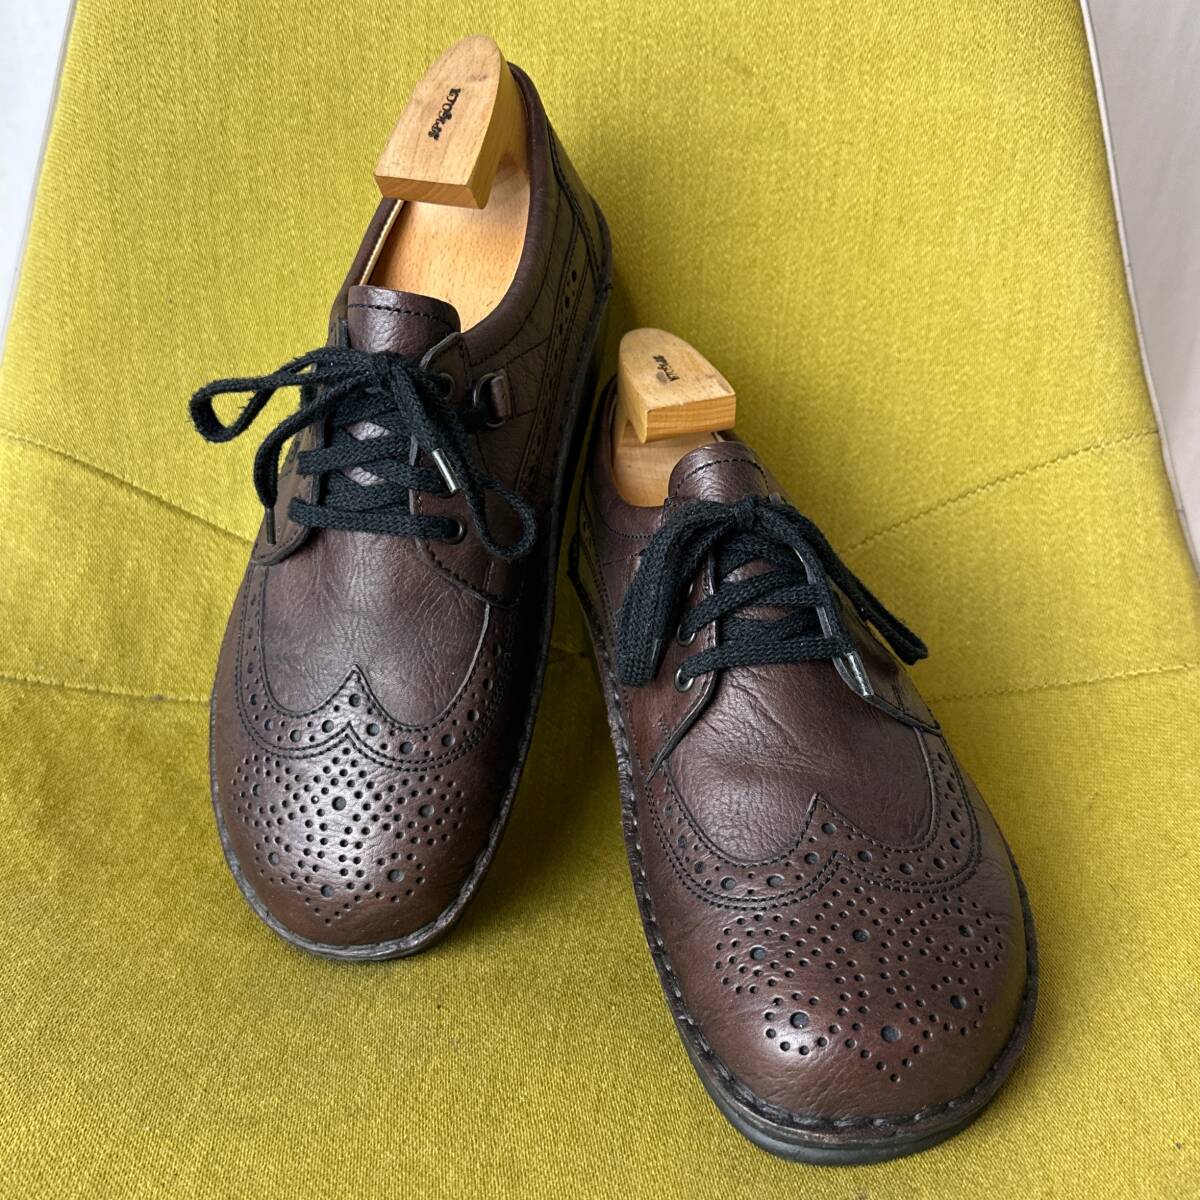  прекрасный товар Finn comfort ласты комфорт прогулочные туфли Wing chip кожа обувь 40 Германия производства 25.0 соответствует спортивные туфли 